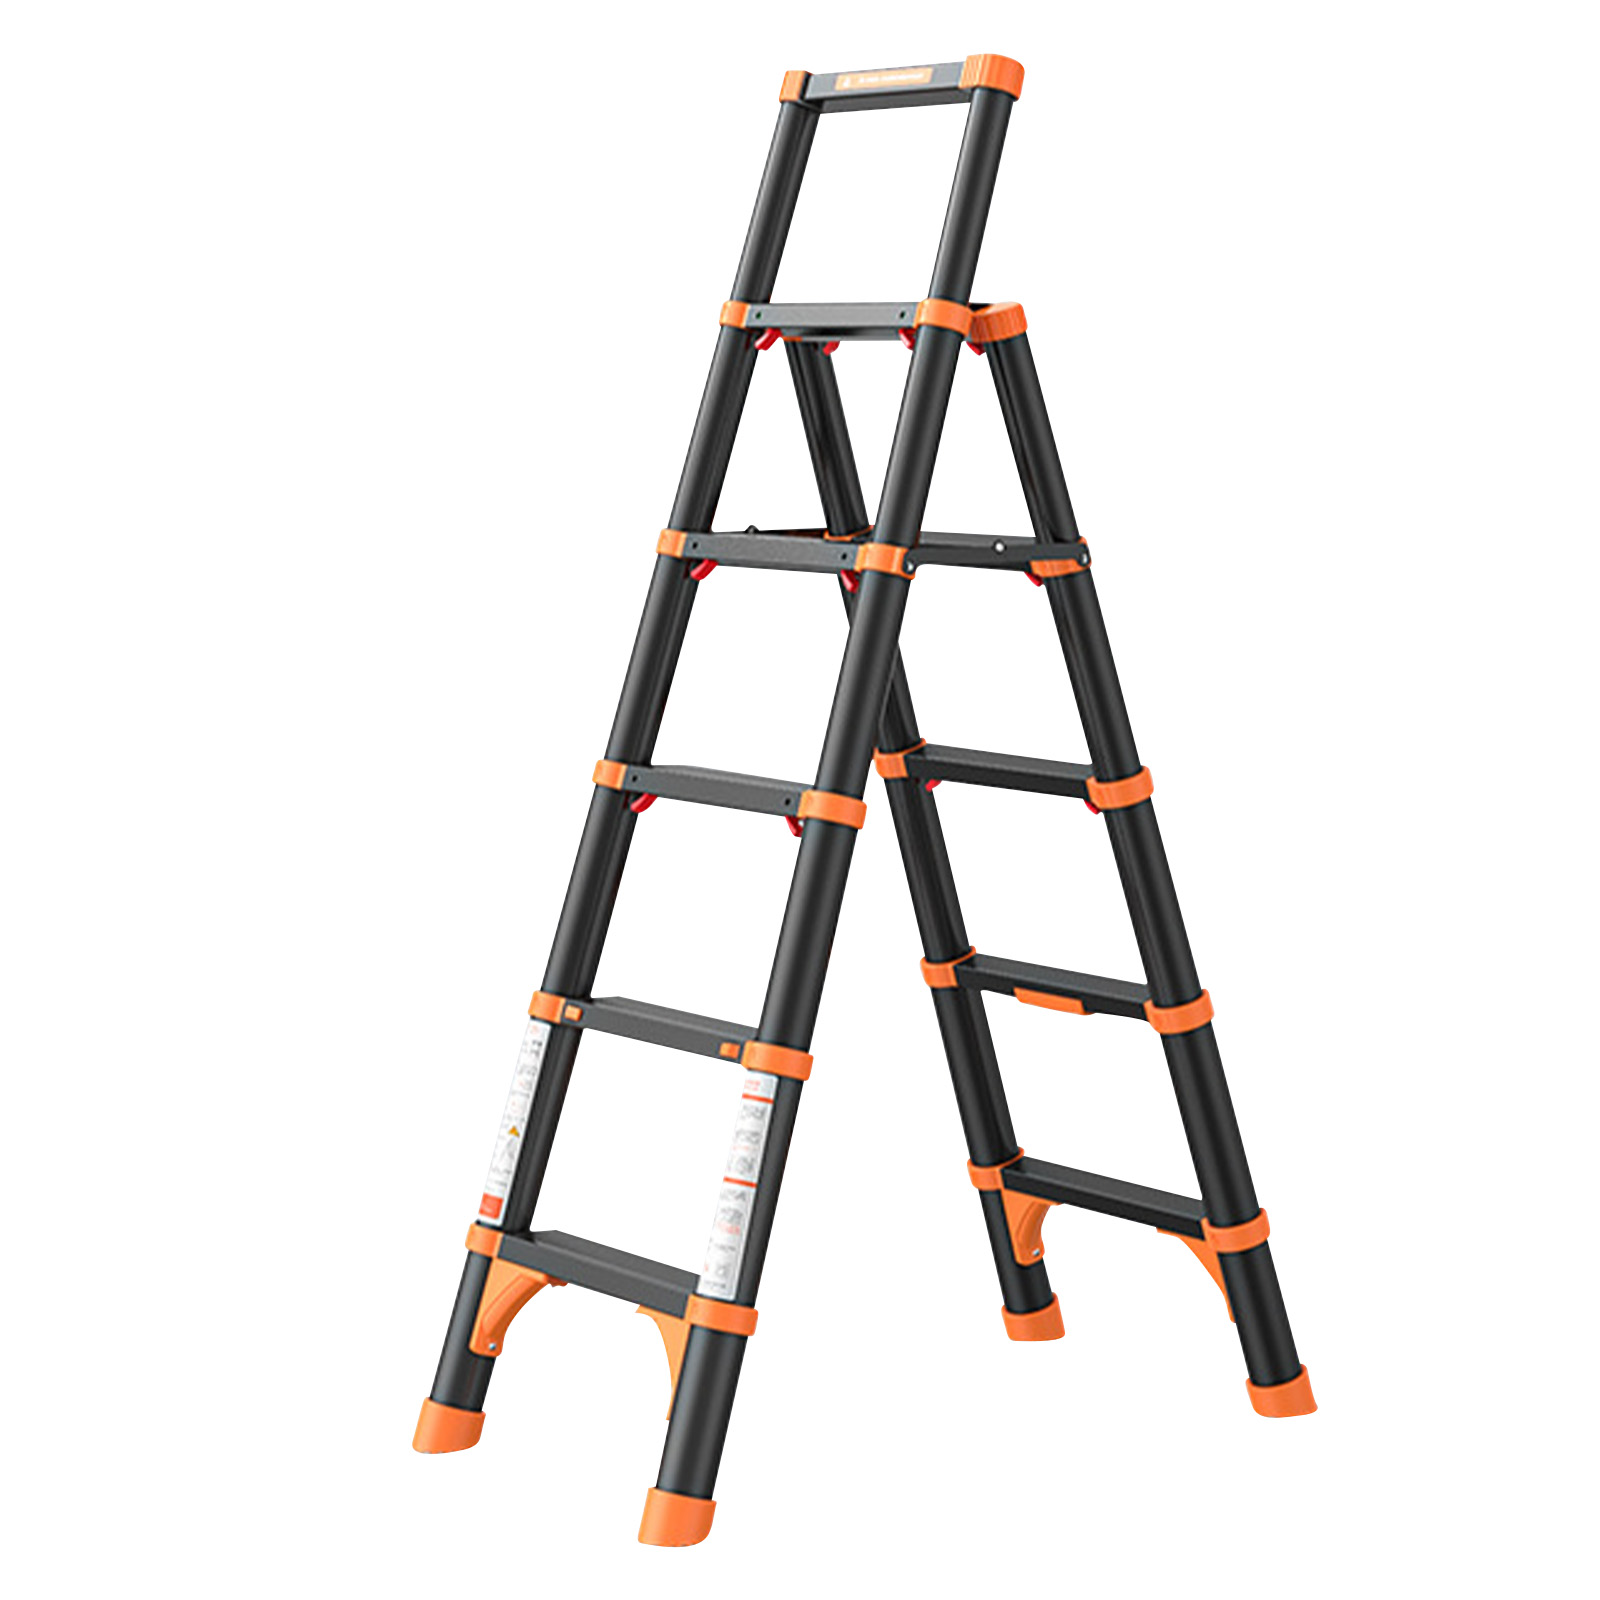 Black and orange five-step ladder